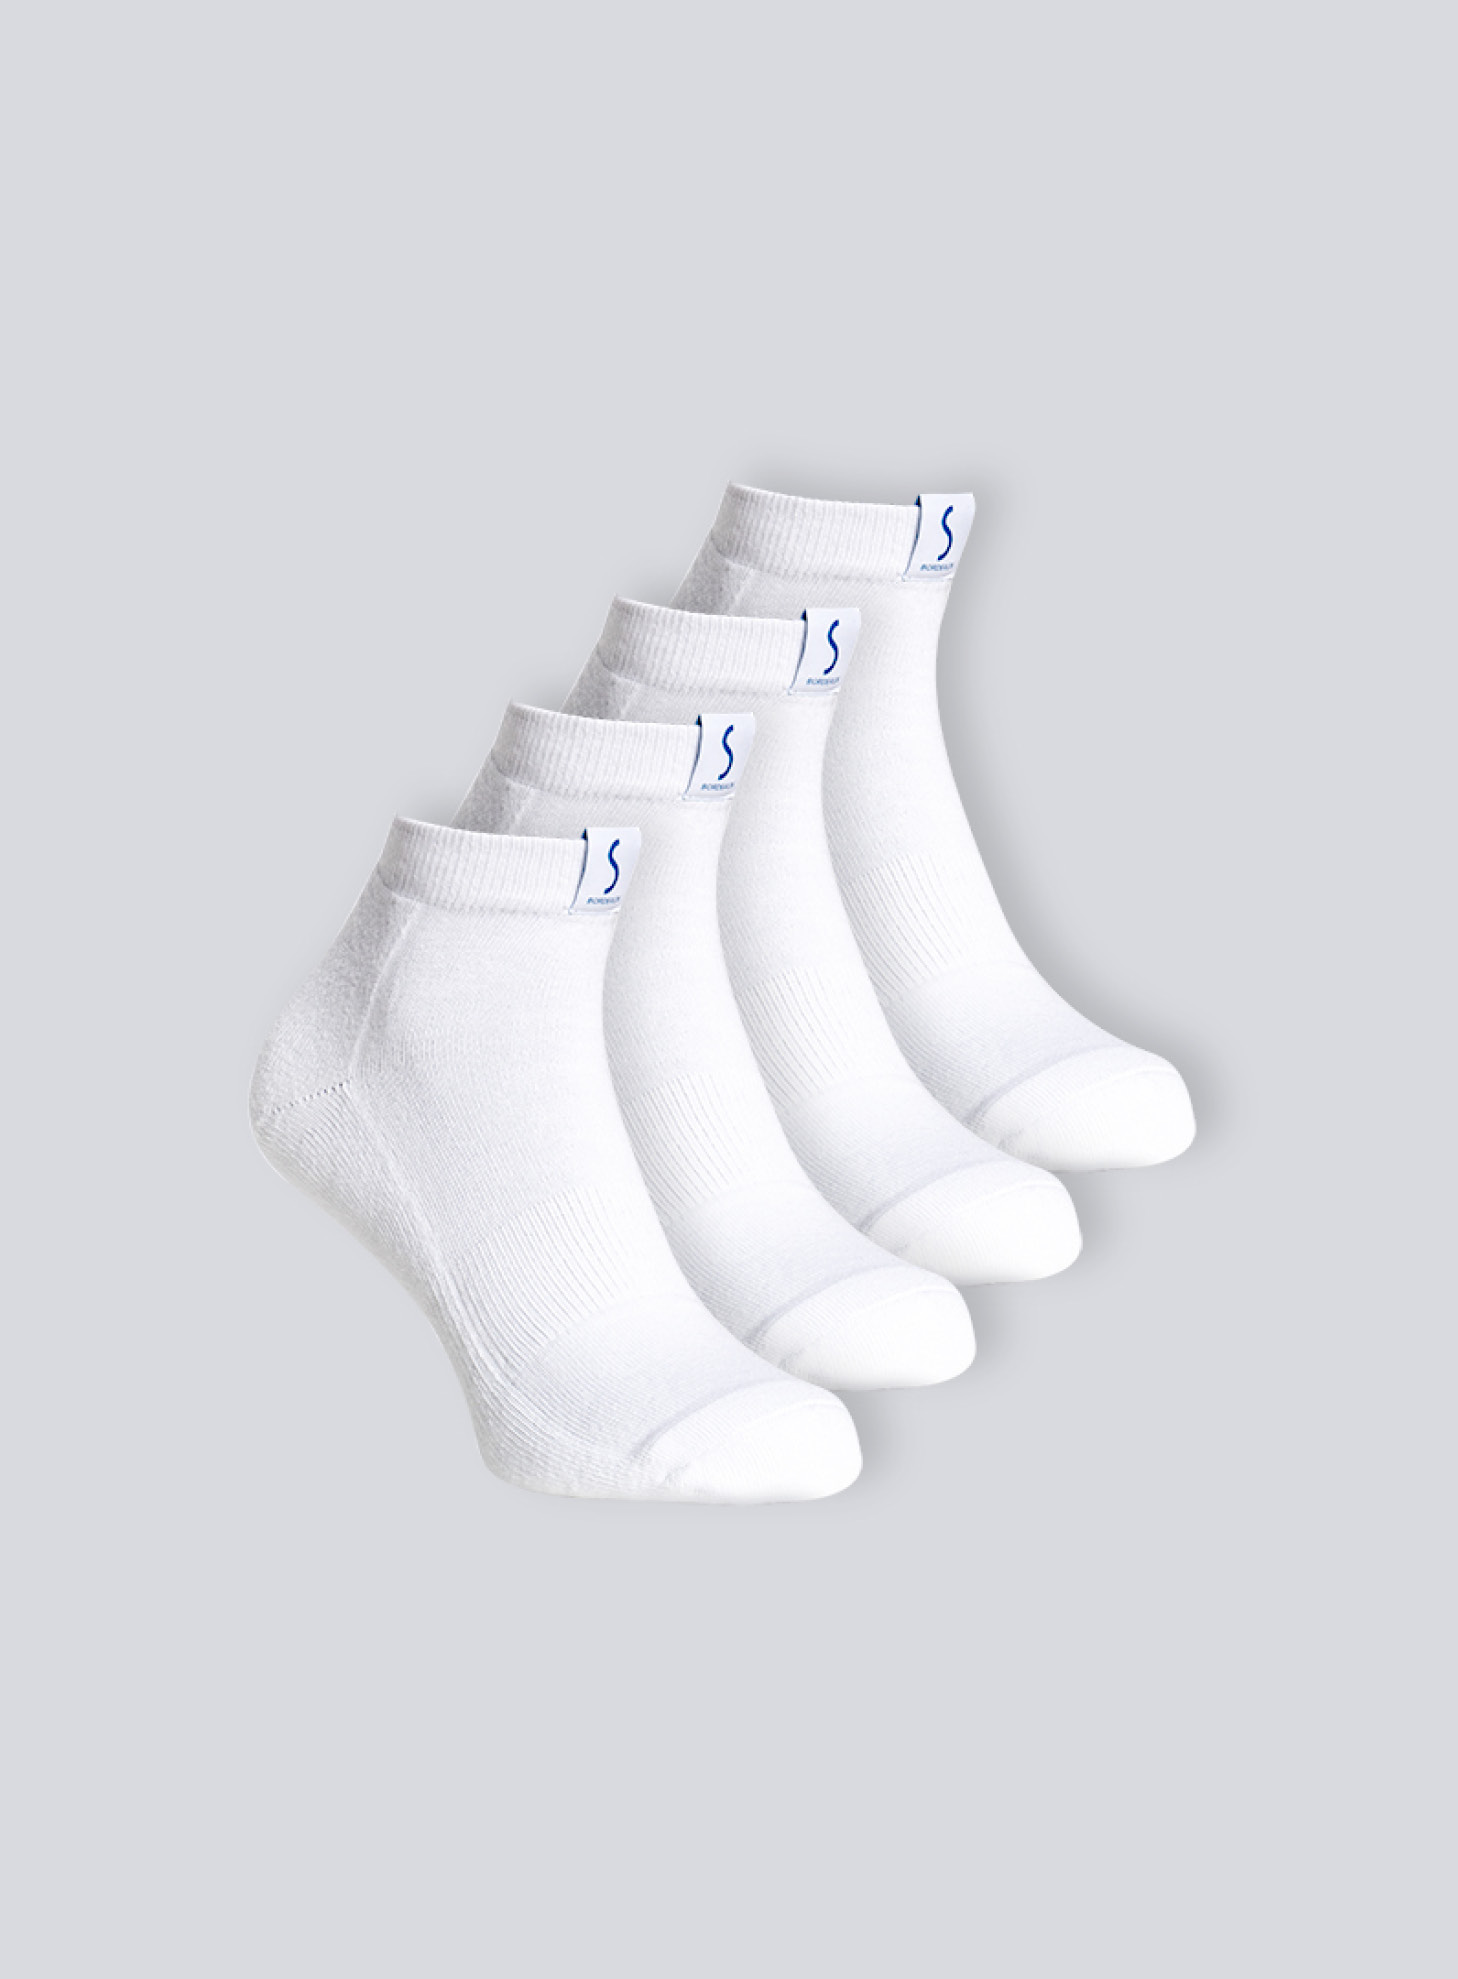 Quatre paires de chaussettes socquettes blanches pour le sport pour homme de la marque S BORDEAUX